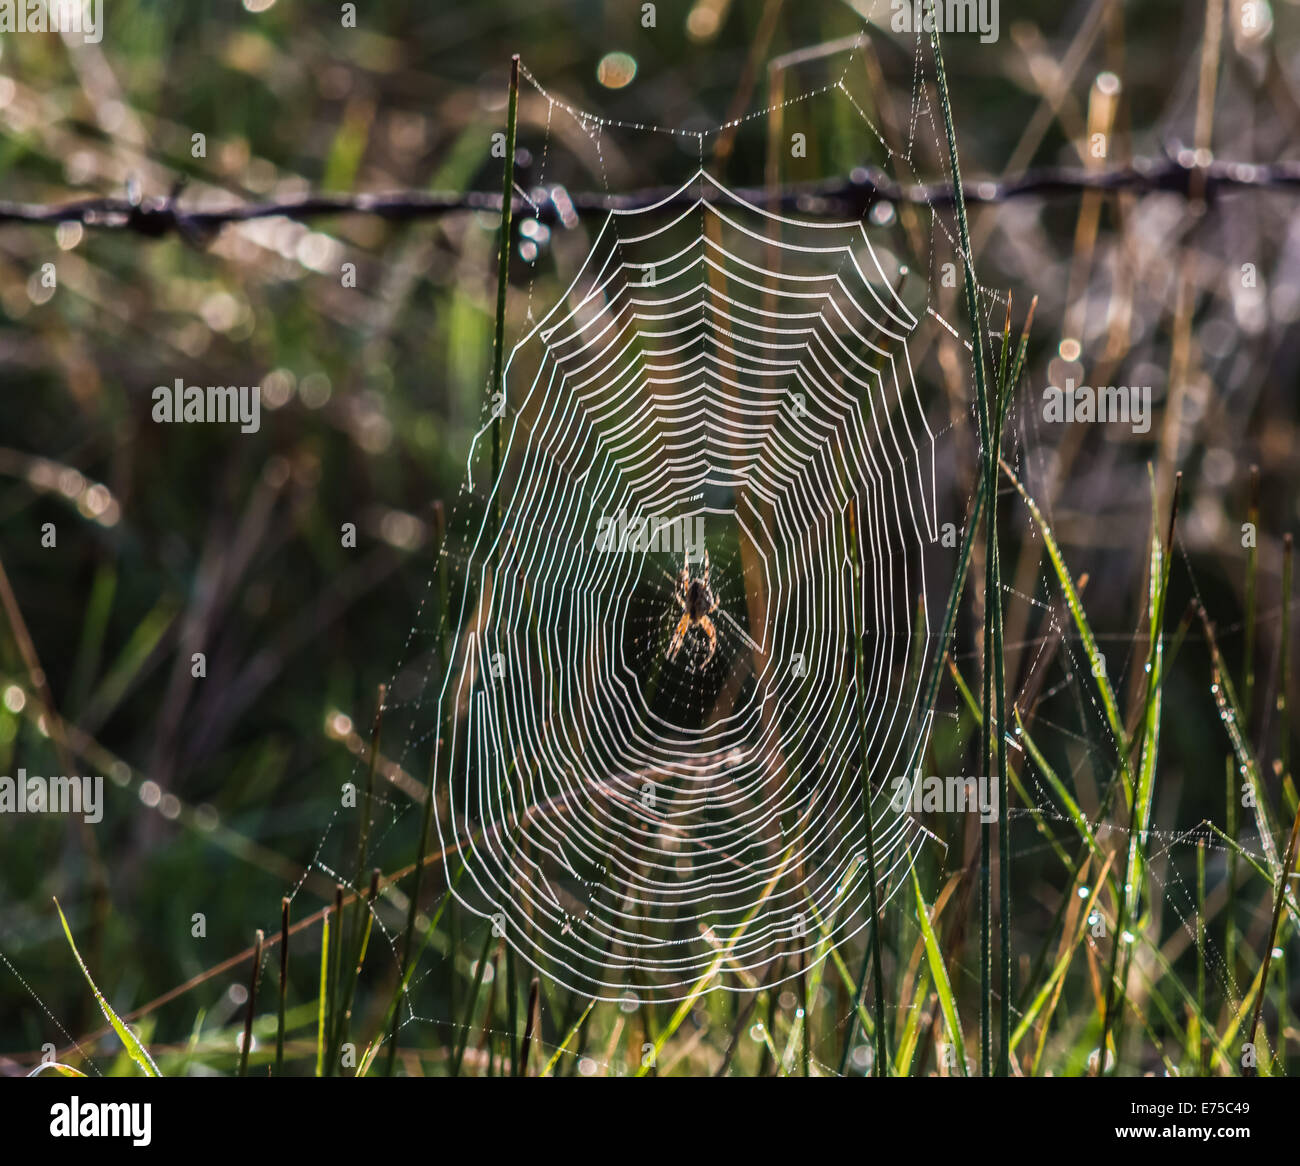 Spider in cobweb Stock Photo